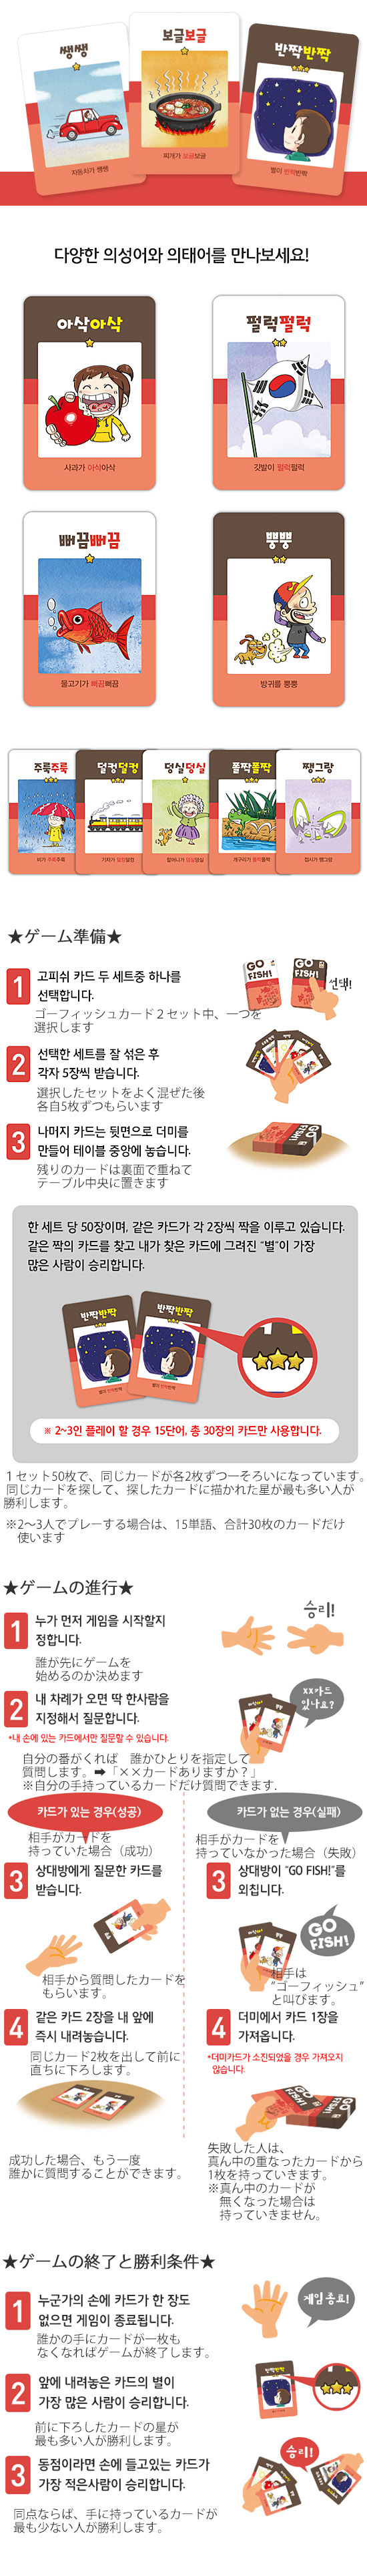 韓国語学習カードゲーム ゴーフィッシュ ハングル 擬声語 擬態語 韓国情報広場